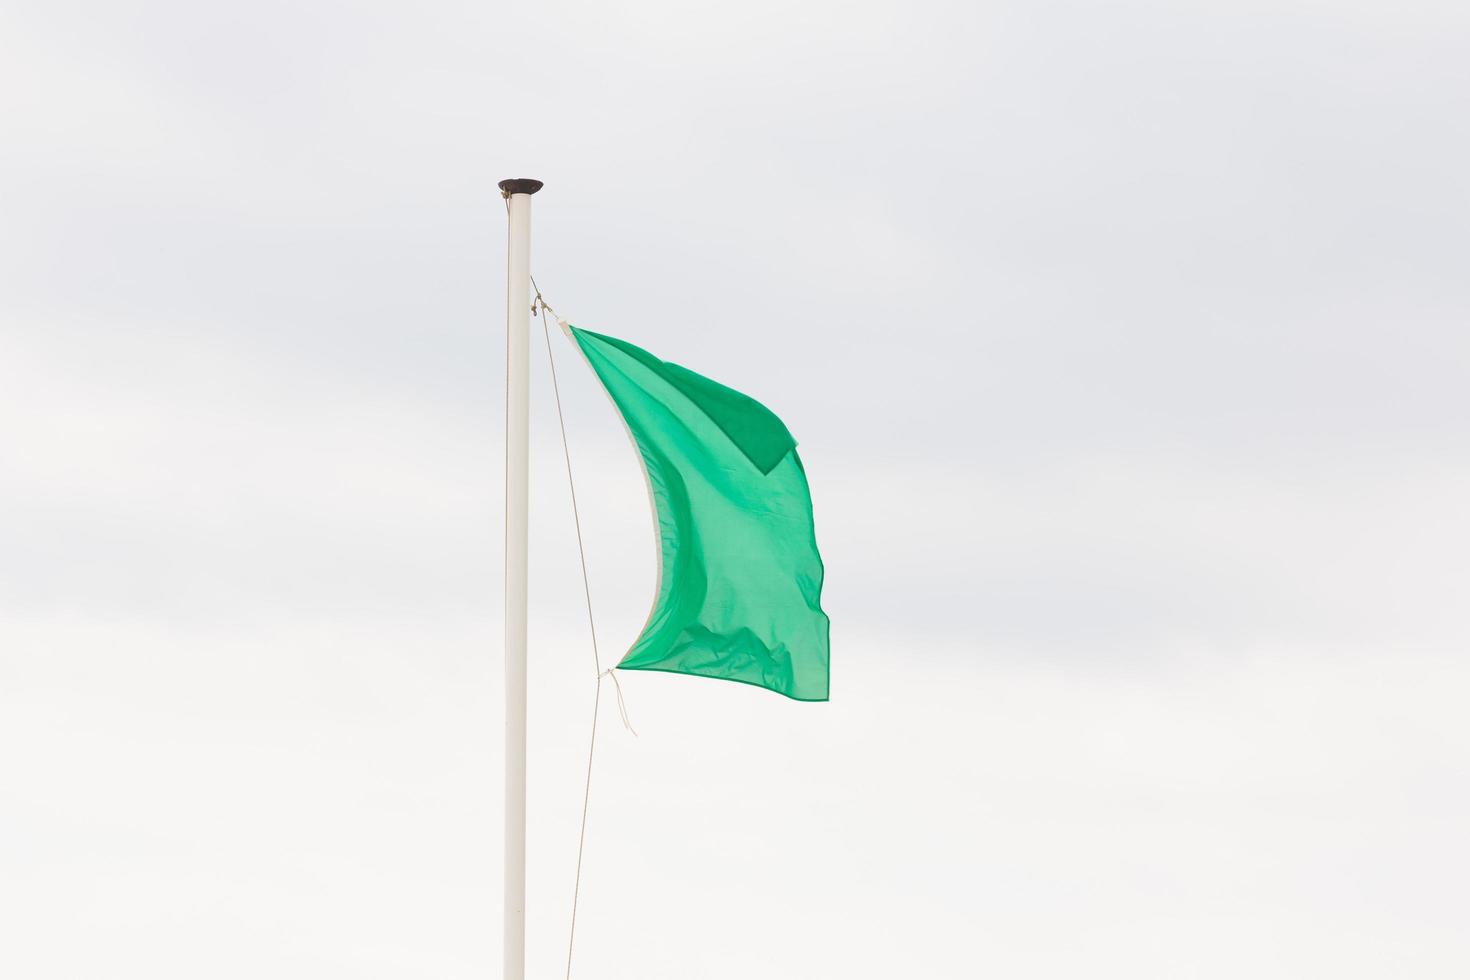 Grüne Flagge zeigt sicheres Baden an Stränden an foto